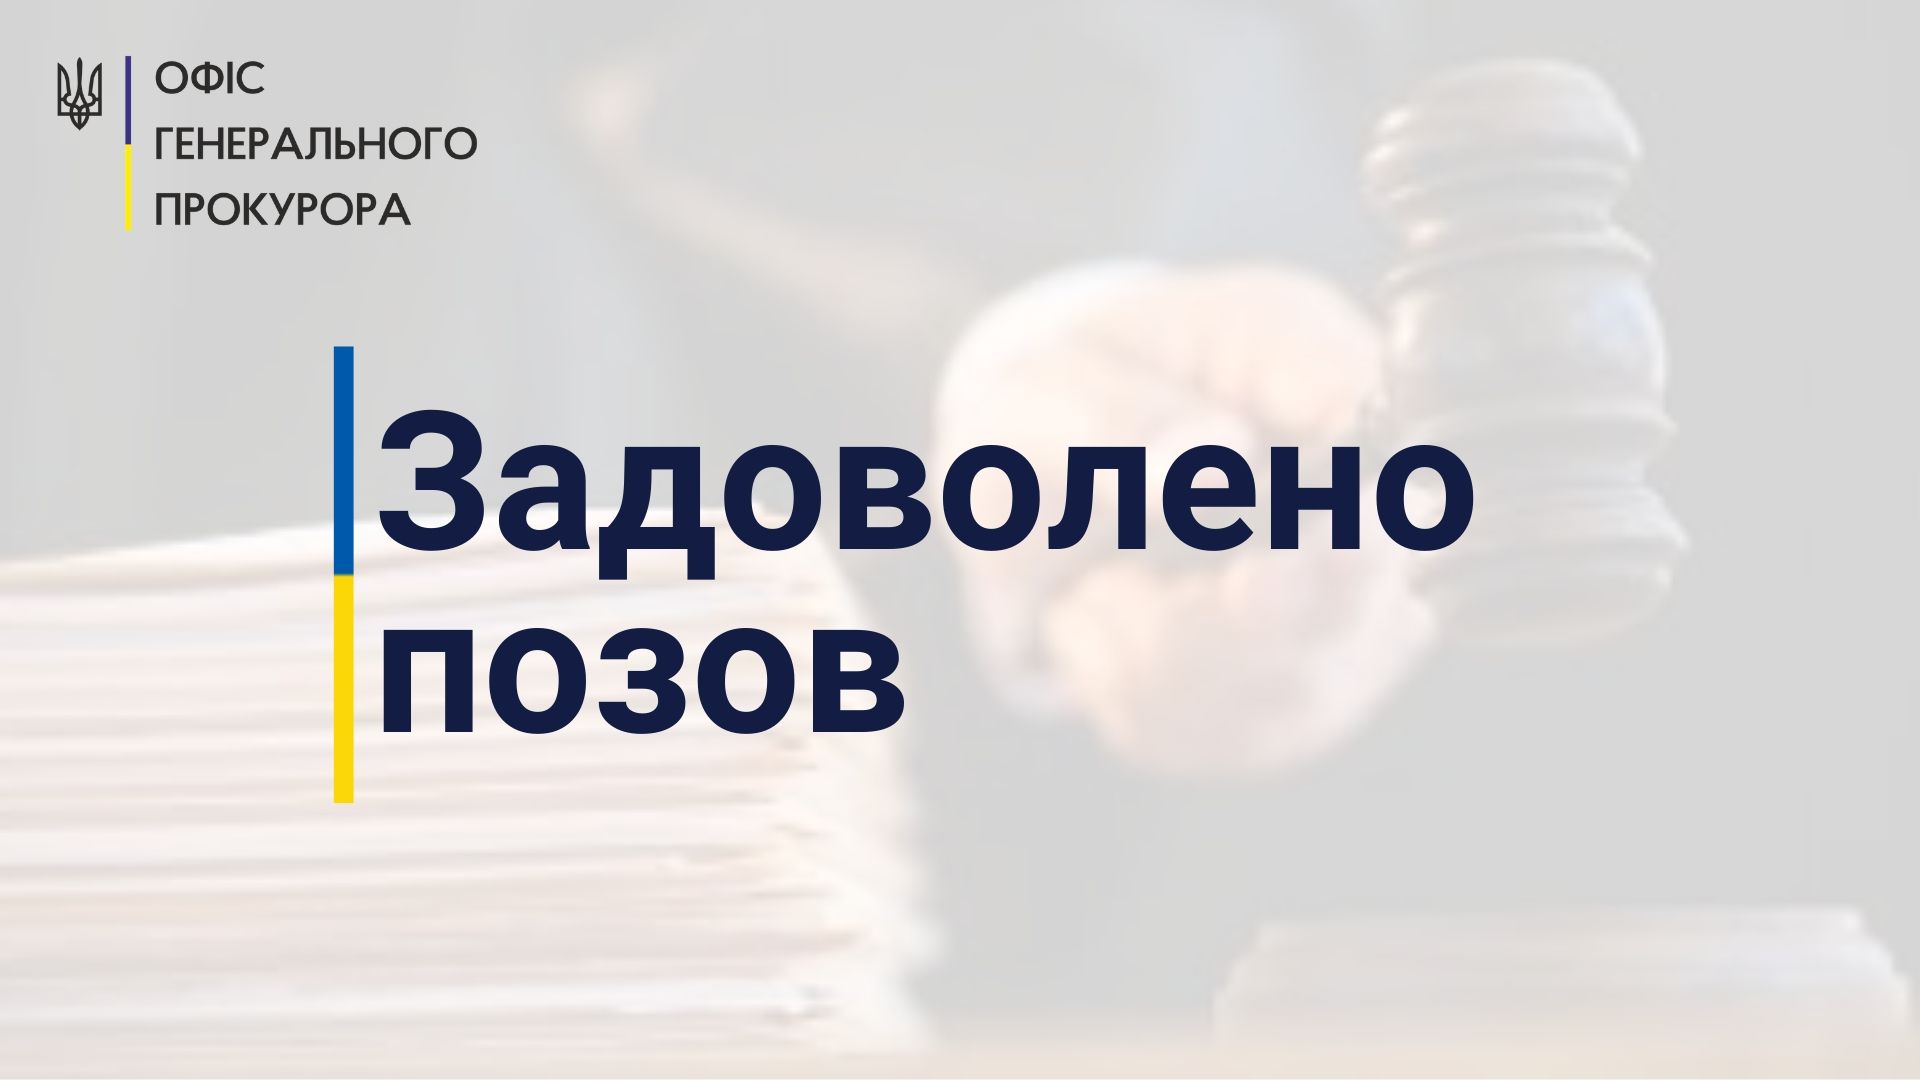 Cтолична прокуратура повернула до комунальної власності землю вартістю 45,7 млн грн